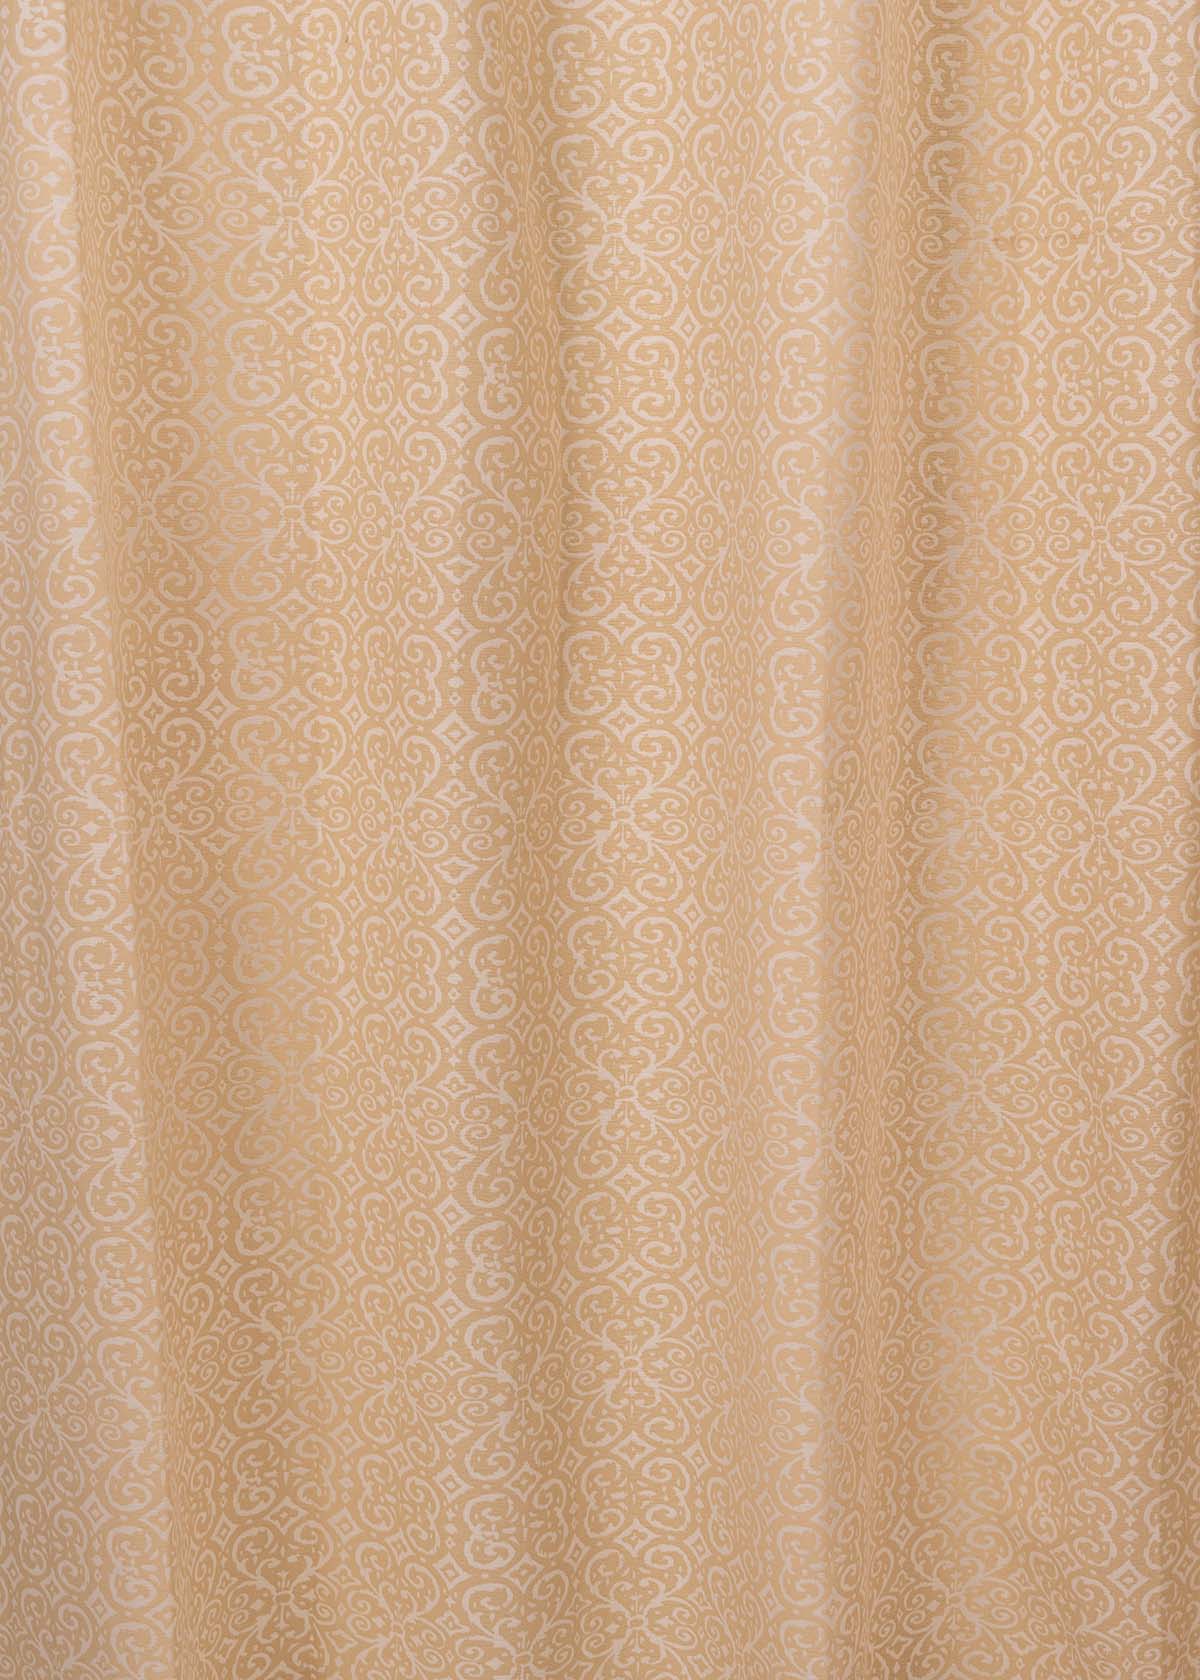 Antique Rose 100% cotton minimal curtain for living room - Room darkening - Cream - Pack of 1